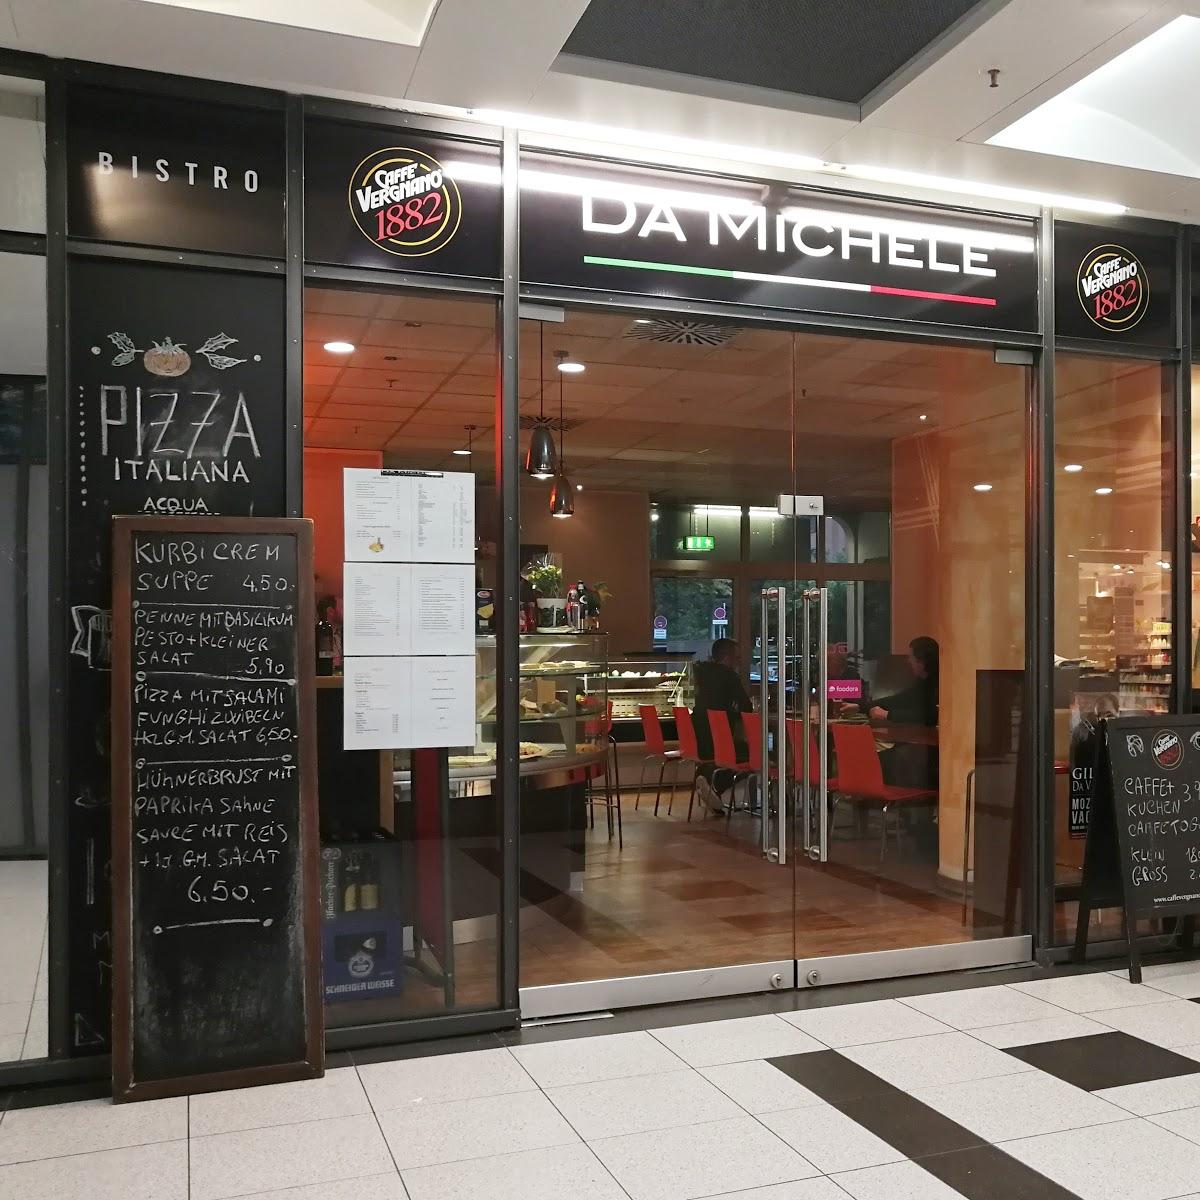 Restaurant "Da Michele" in München